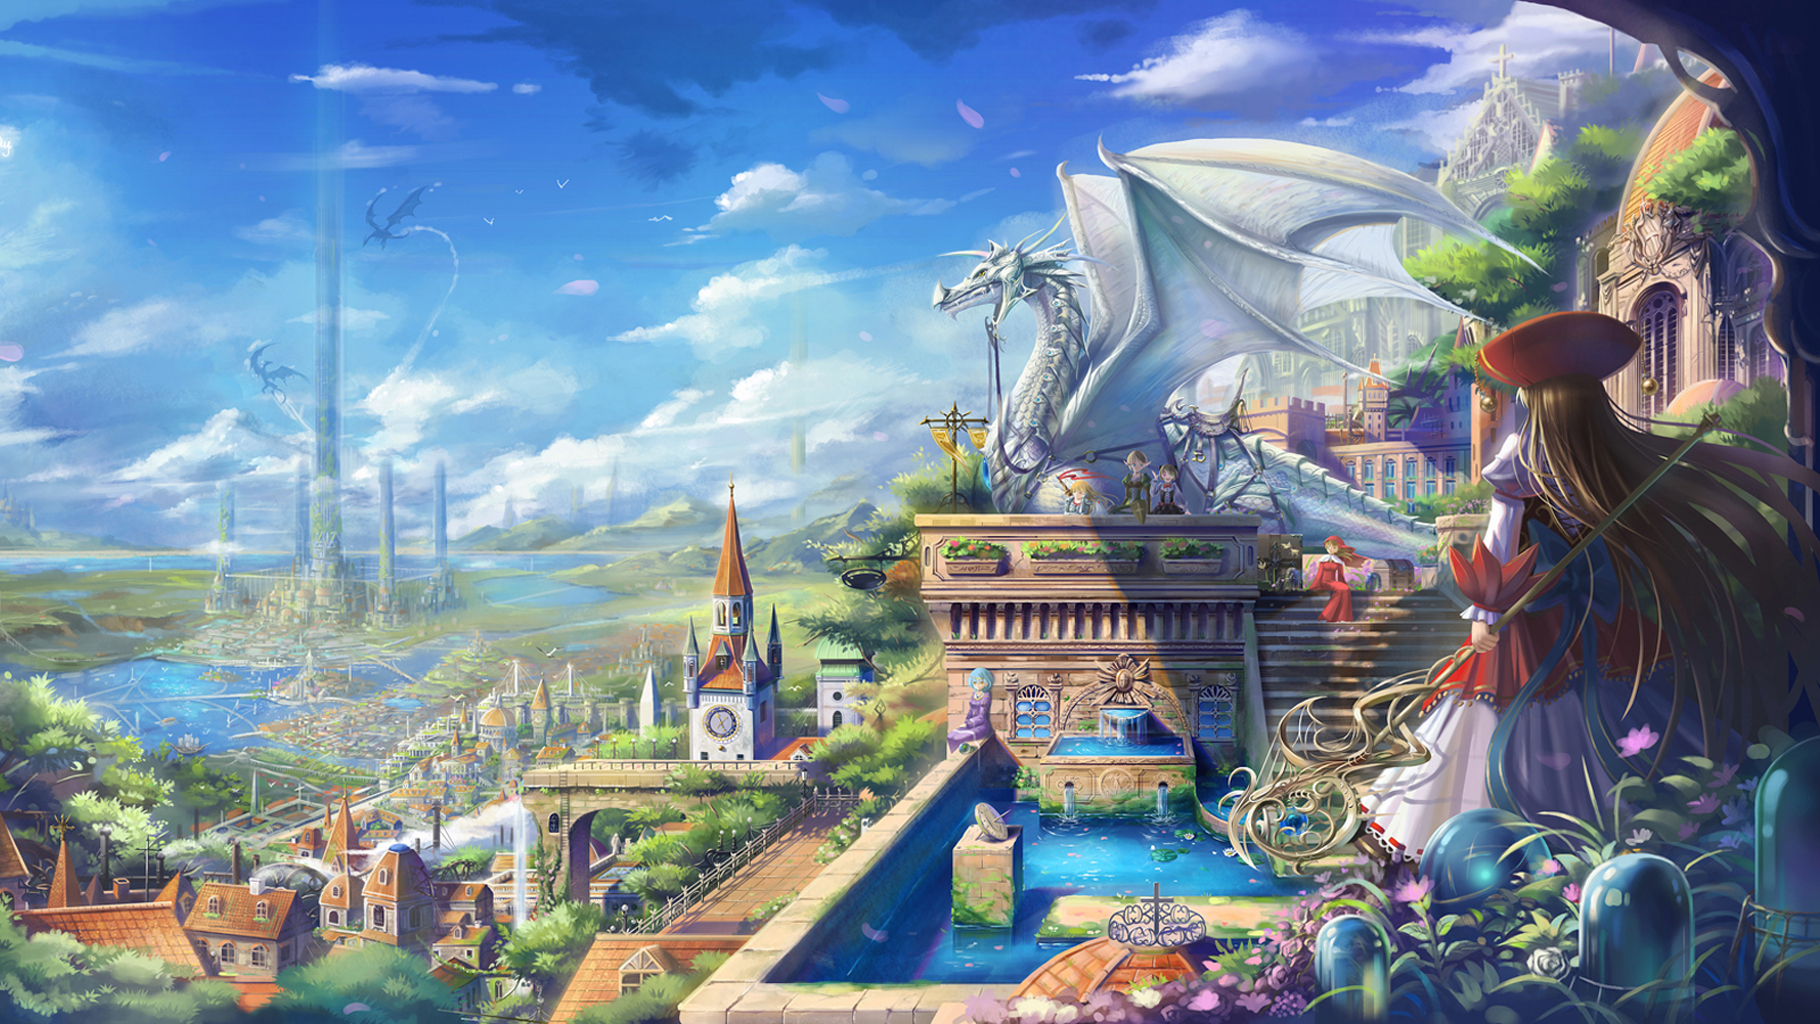 dragon city fond d'écran,jeux,jeu d'aventure d'action,oeuvre de cg,mythologie,illustration